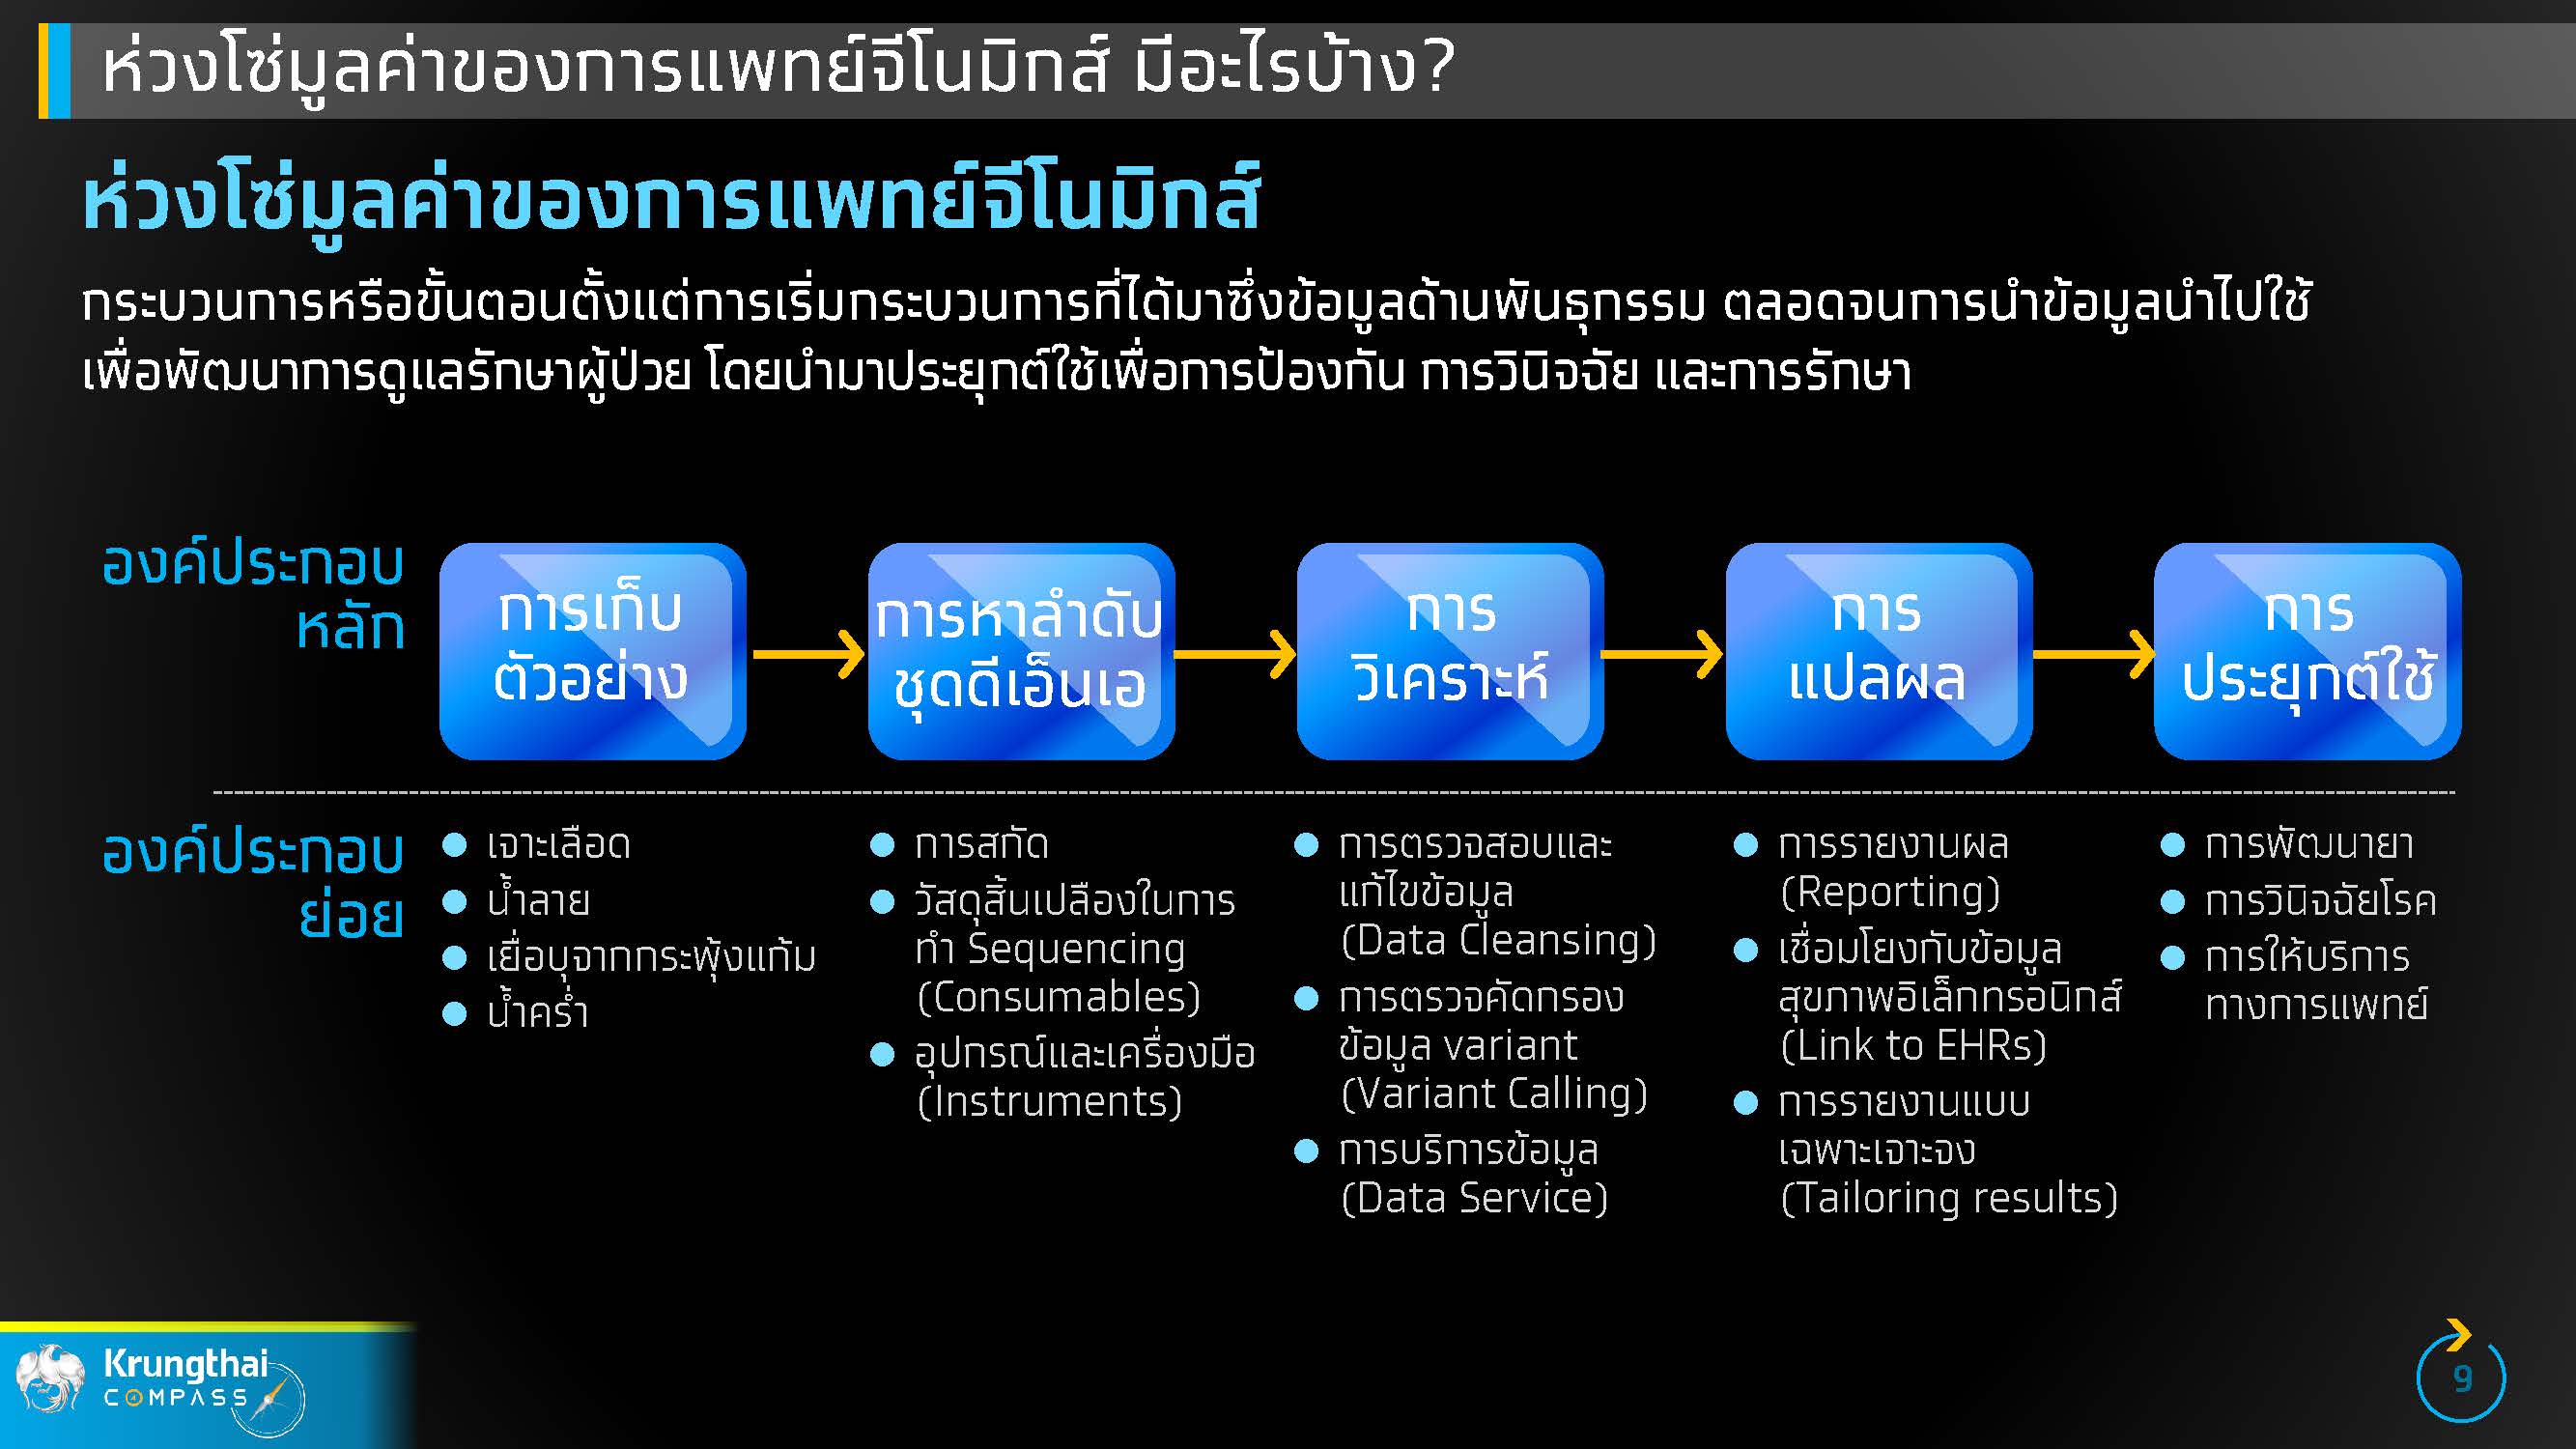 กรุงไทยชี้ การแพทย์จีโนมิกส์ จะนำไทยสู่ Medical Hub เต็มรูปแบบ